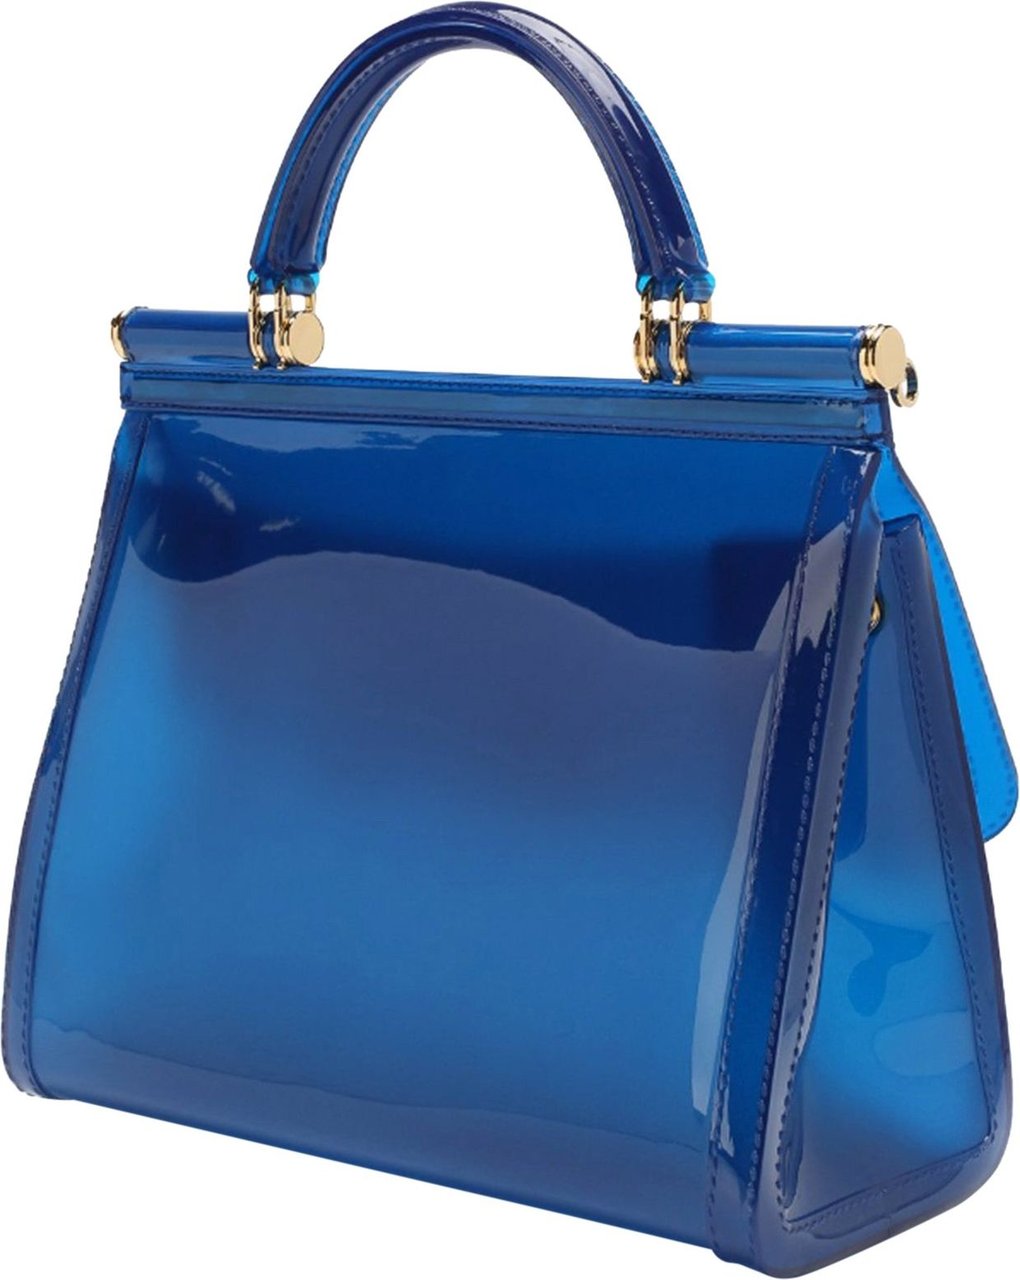 Dolce & Gabbana Dolce & Gabbana Sicily Rubber Bag Blauw